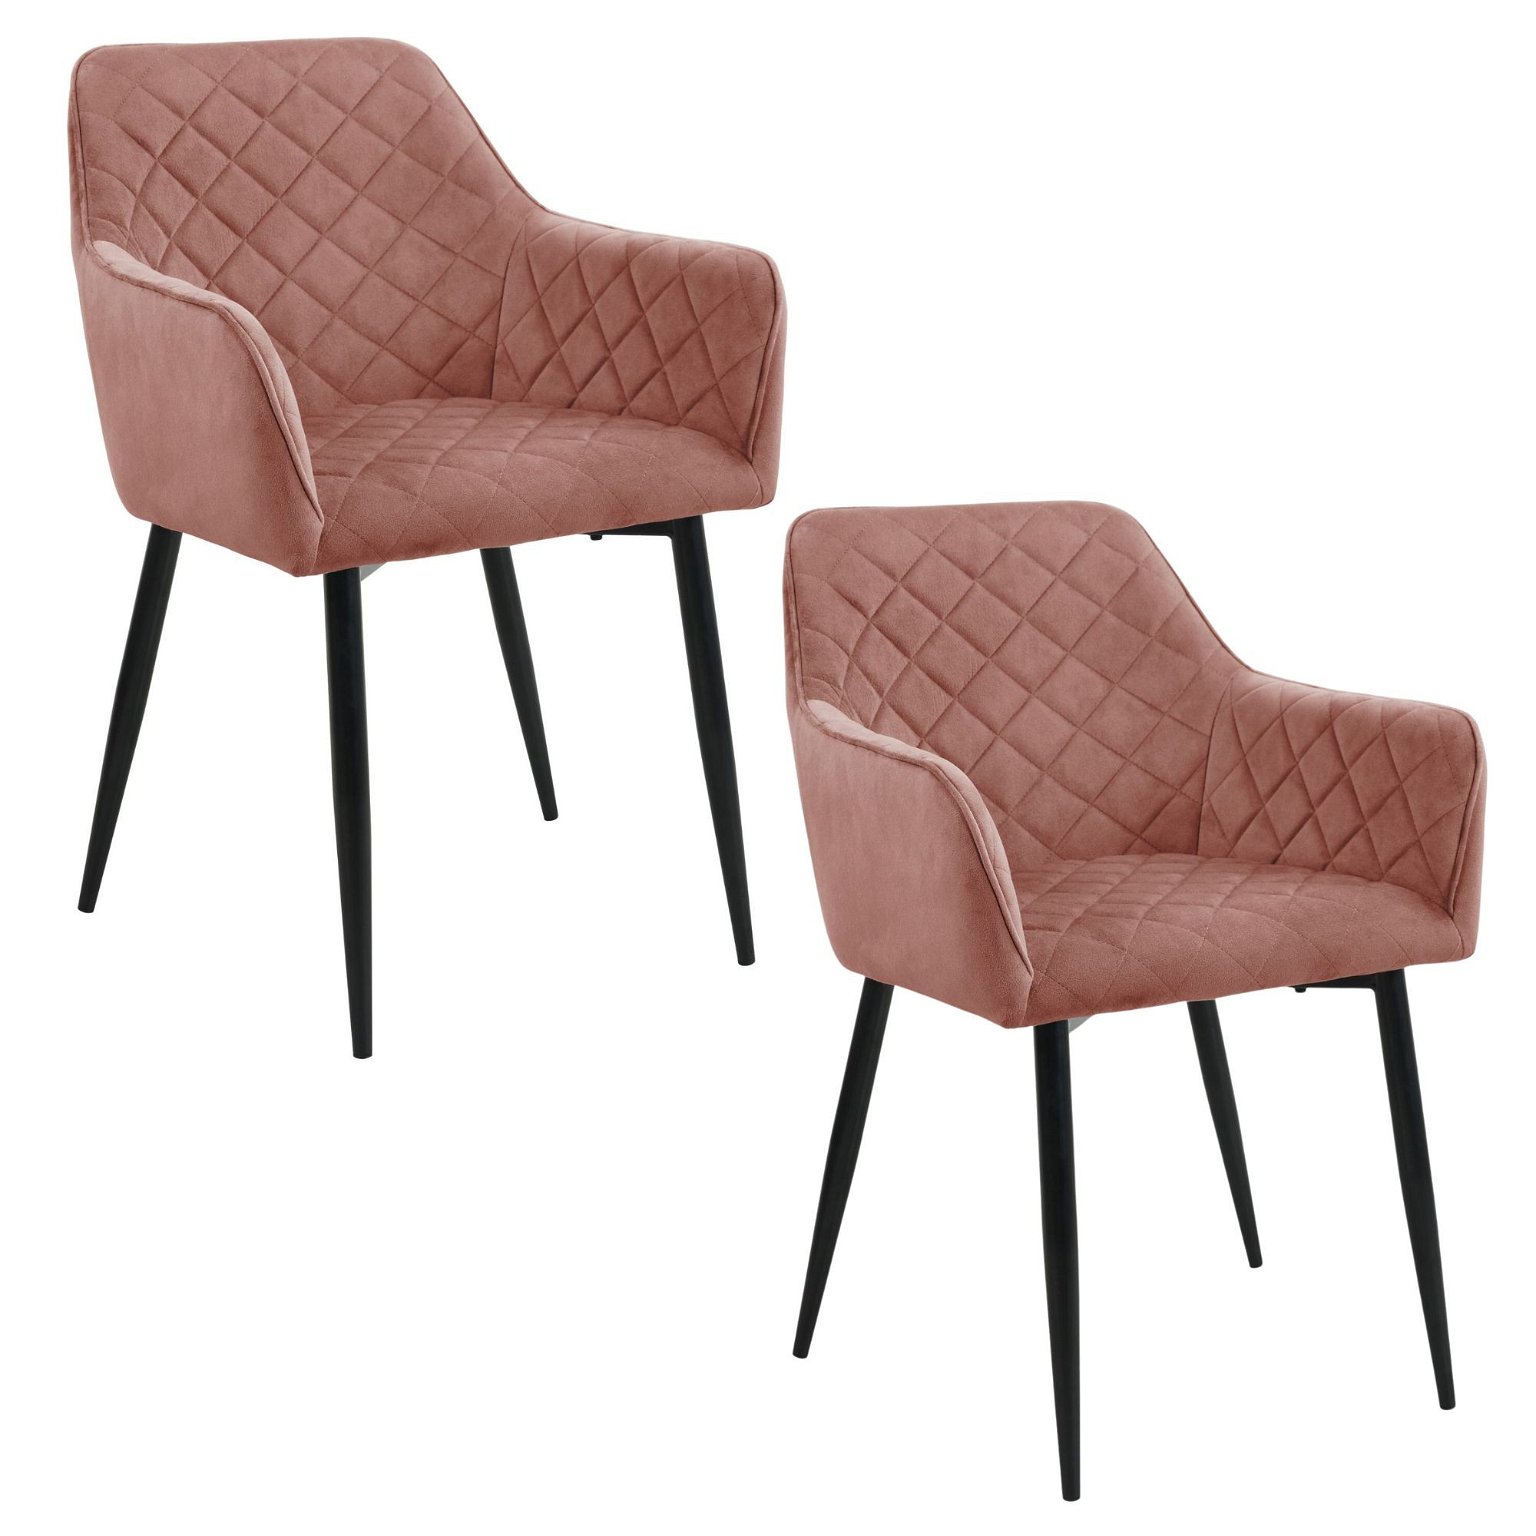 2-jų kėdžių komplektas SJ.082, rožinė